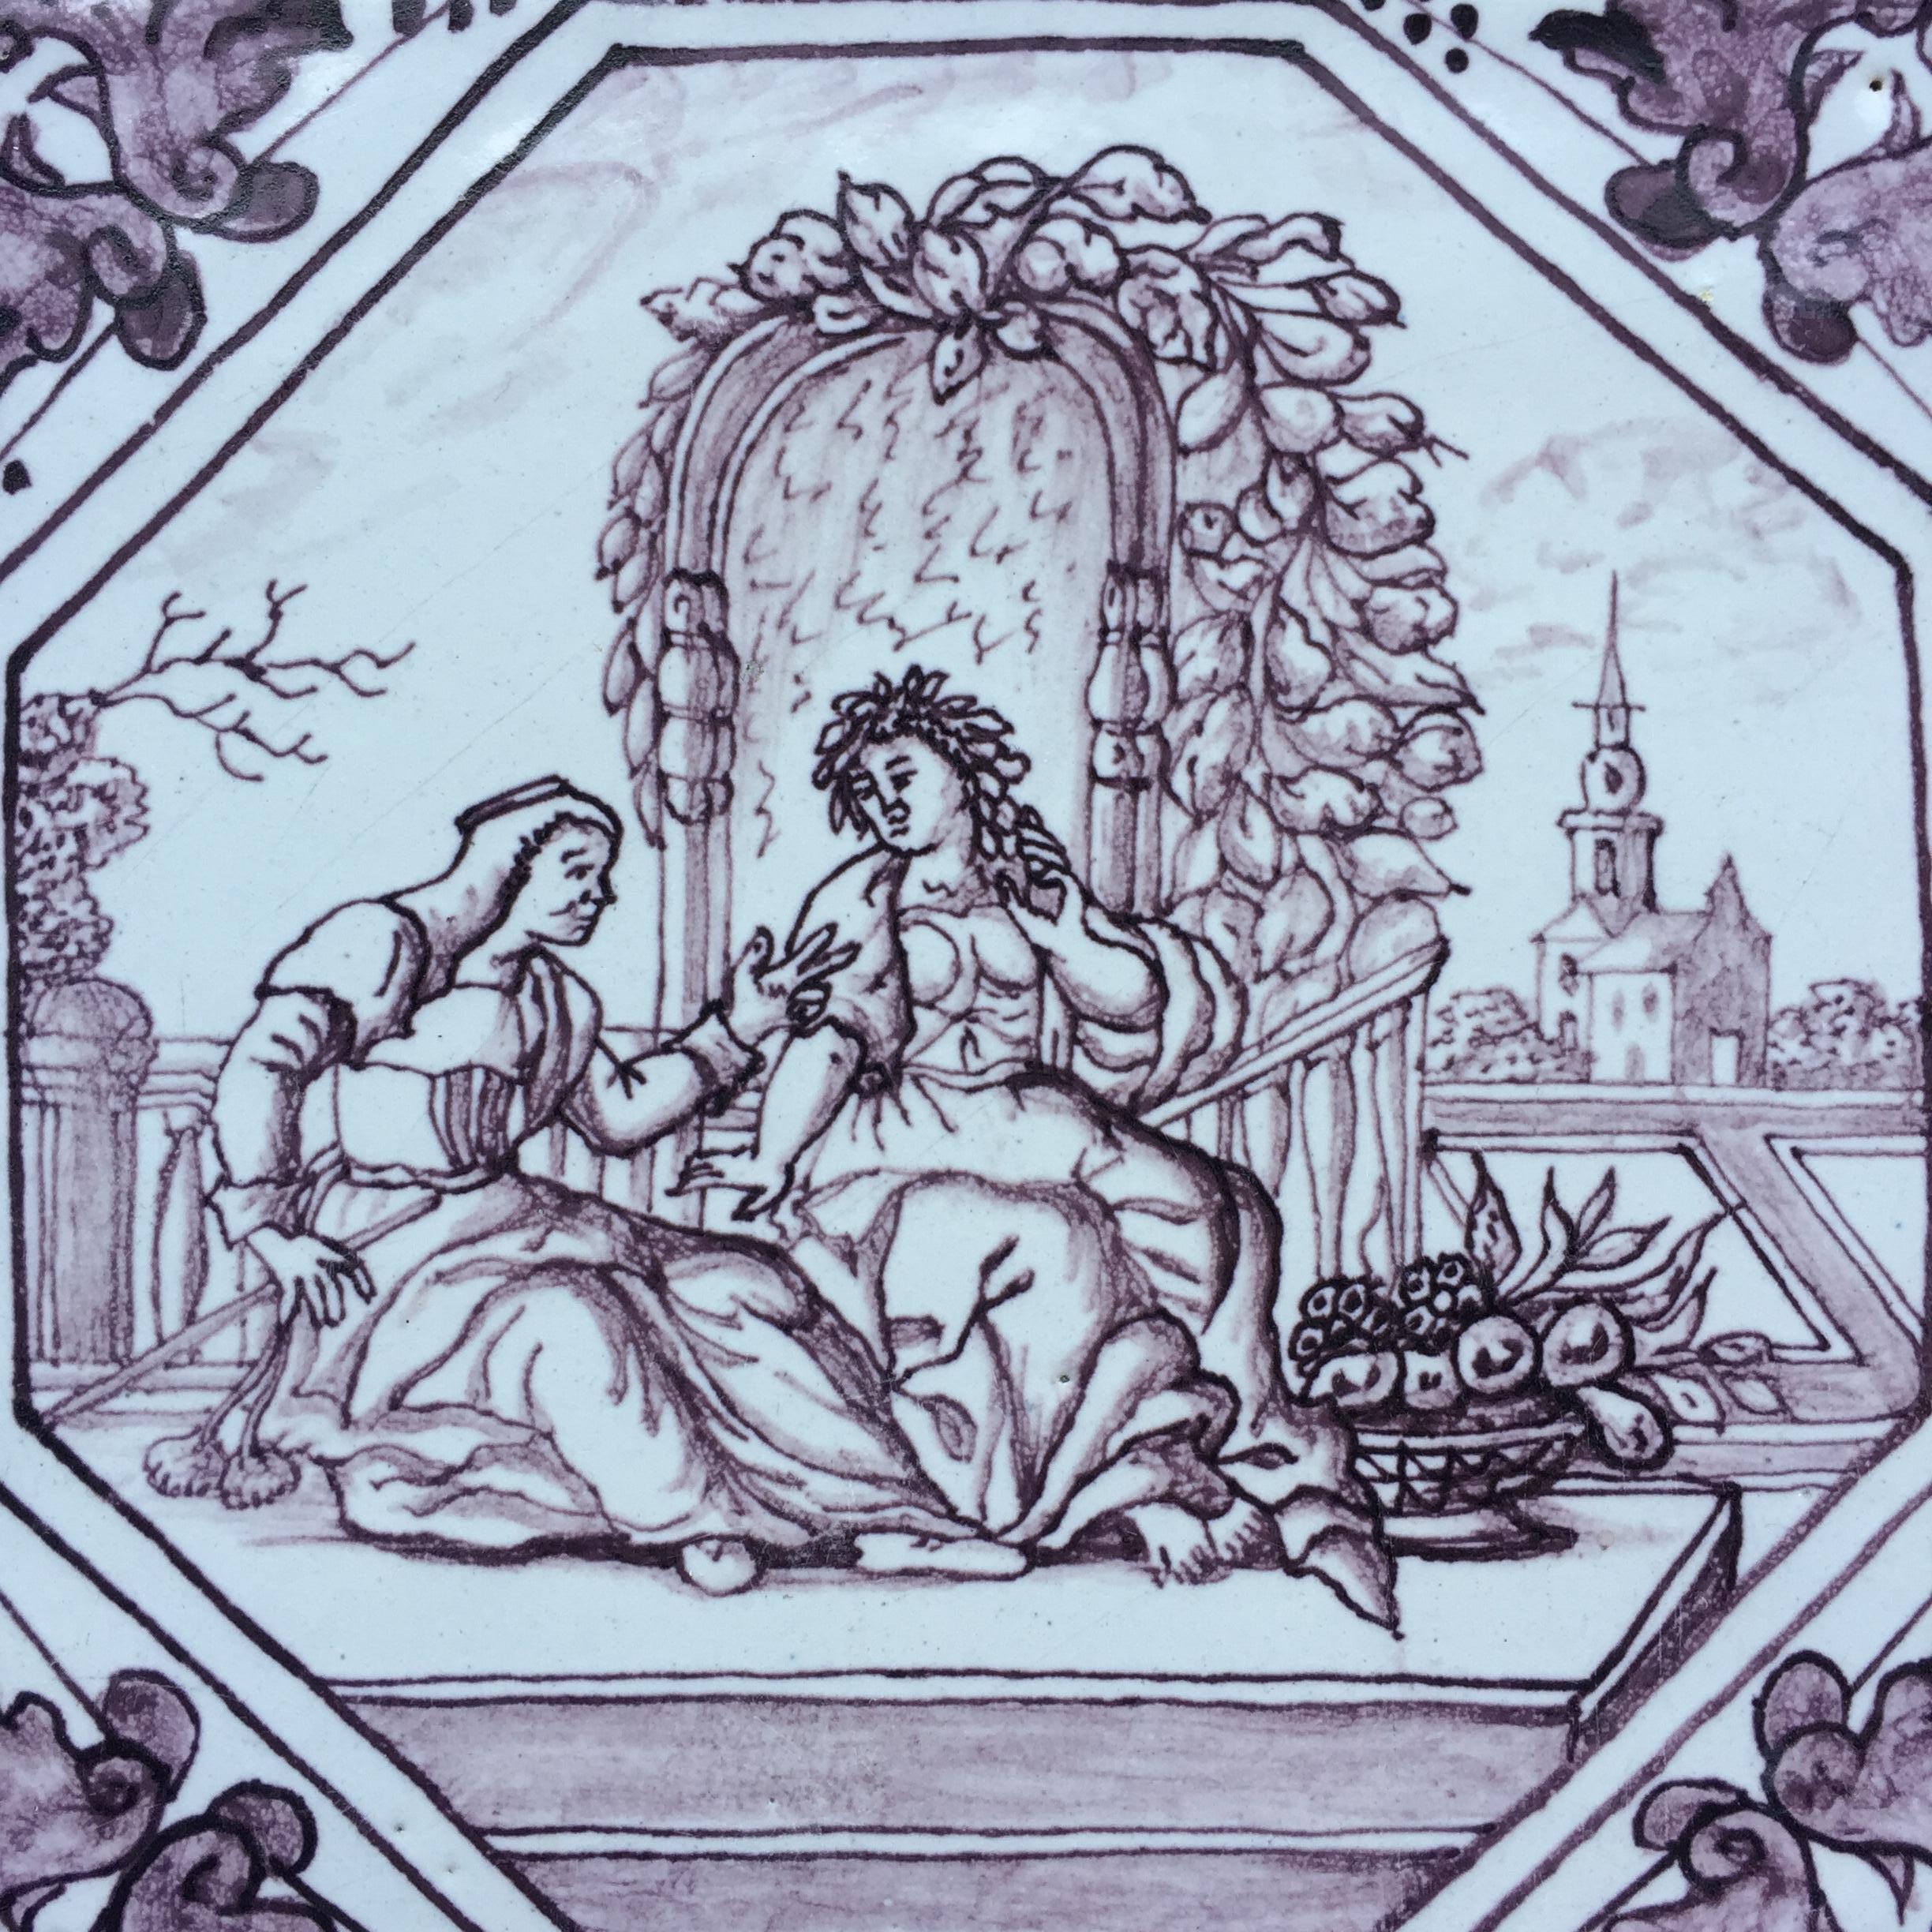 Rotterdam
Ca. 1740
Atelier Hendrick Schut

Un très beau carreau peint avec une décoration mythologique d'après Ovidius.
Ce qui est particulier, c'est que cette tuile présente une décoration tirée de la mythologie romaine, qui n'est pas liée à la